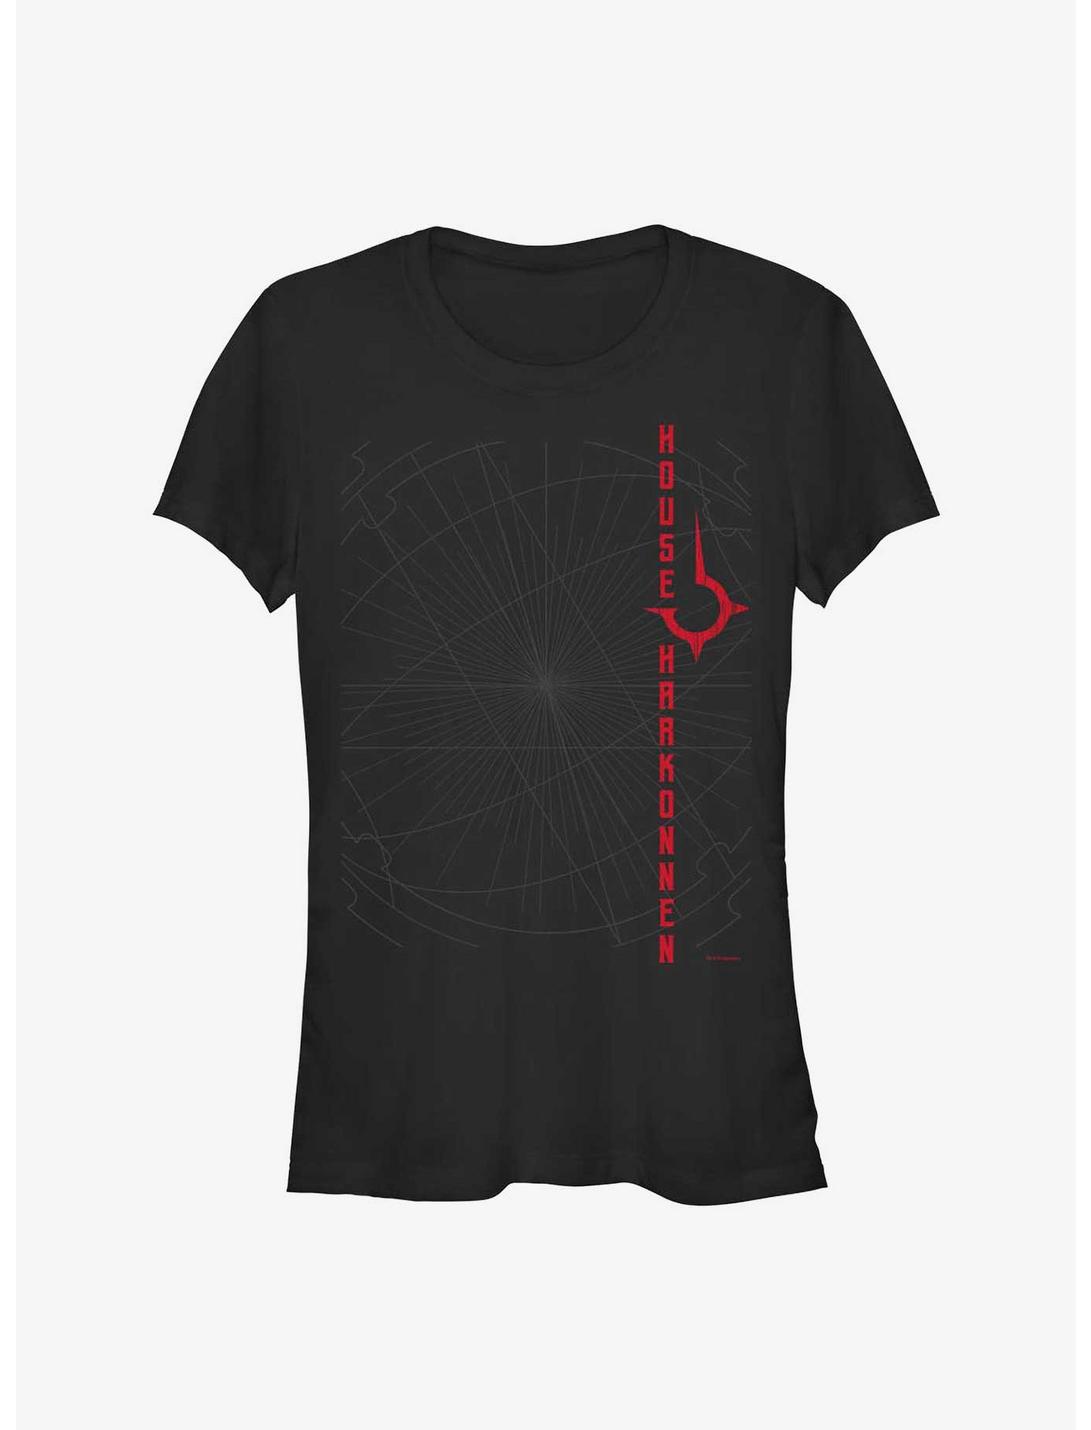 Dune Harkonnen Tech Girls T-Shirt, BLACK, hi-res